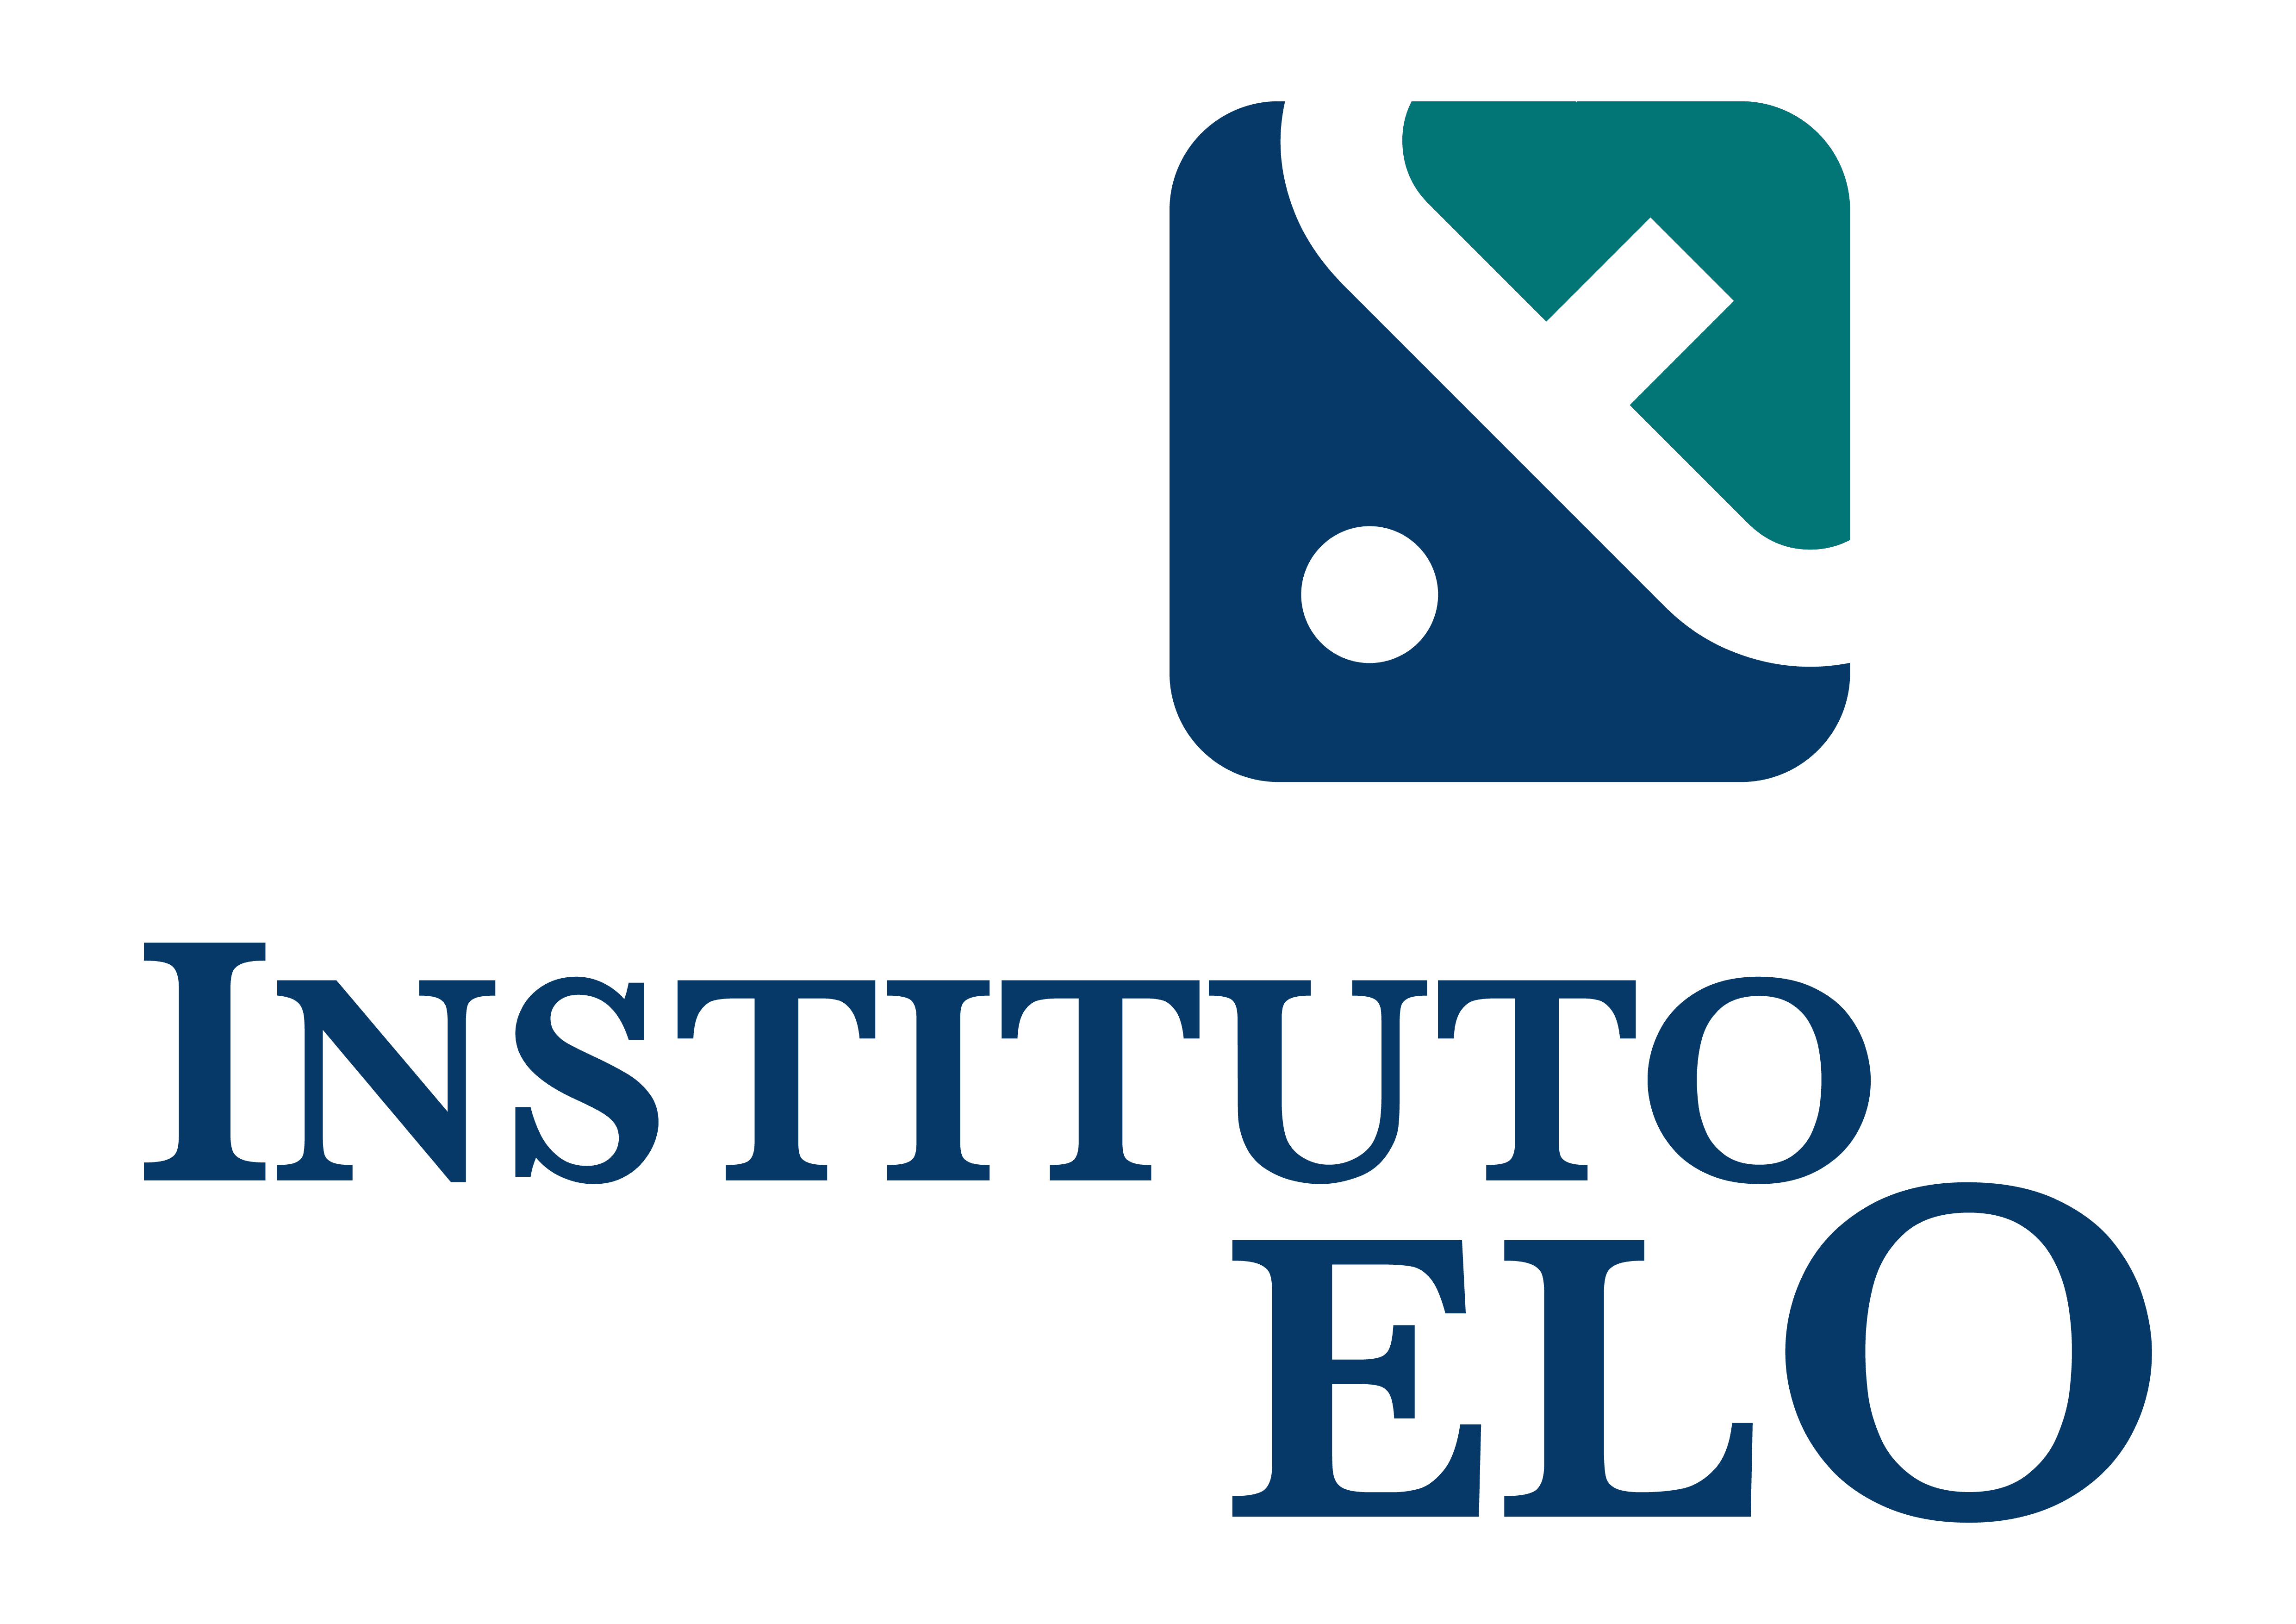 Instituto Elo